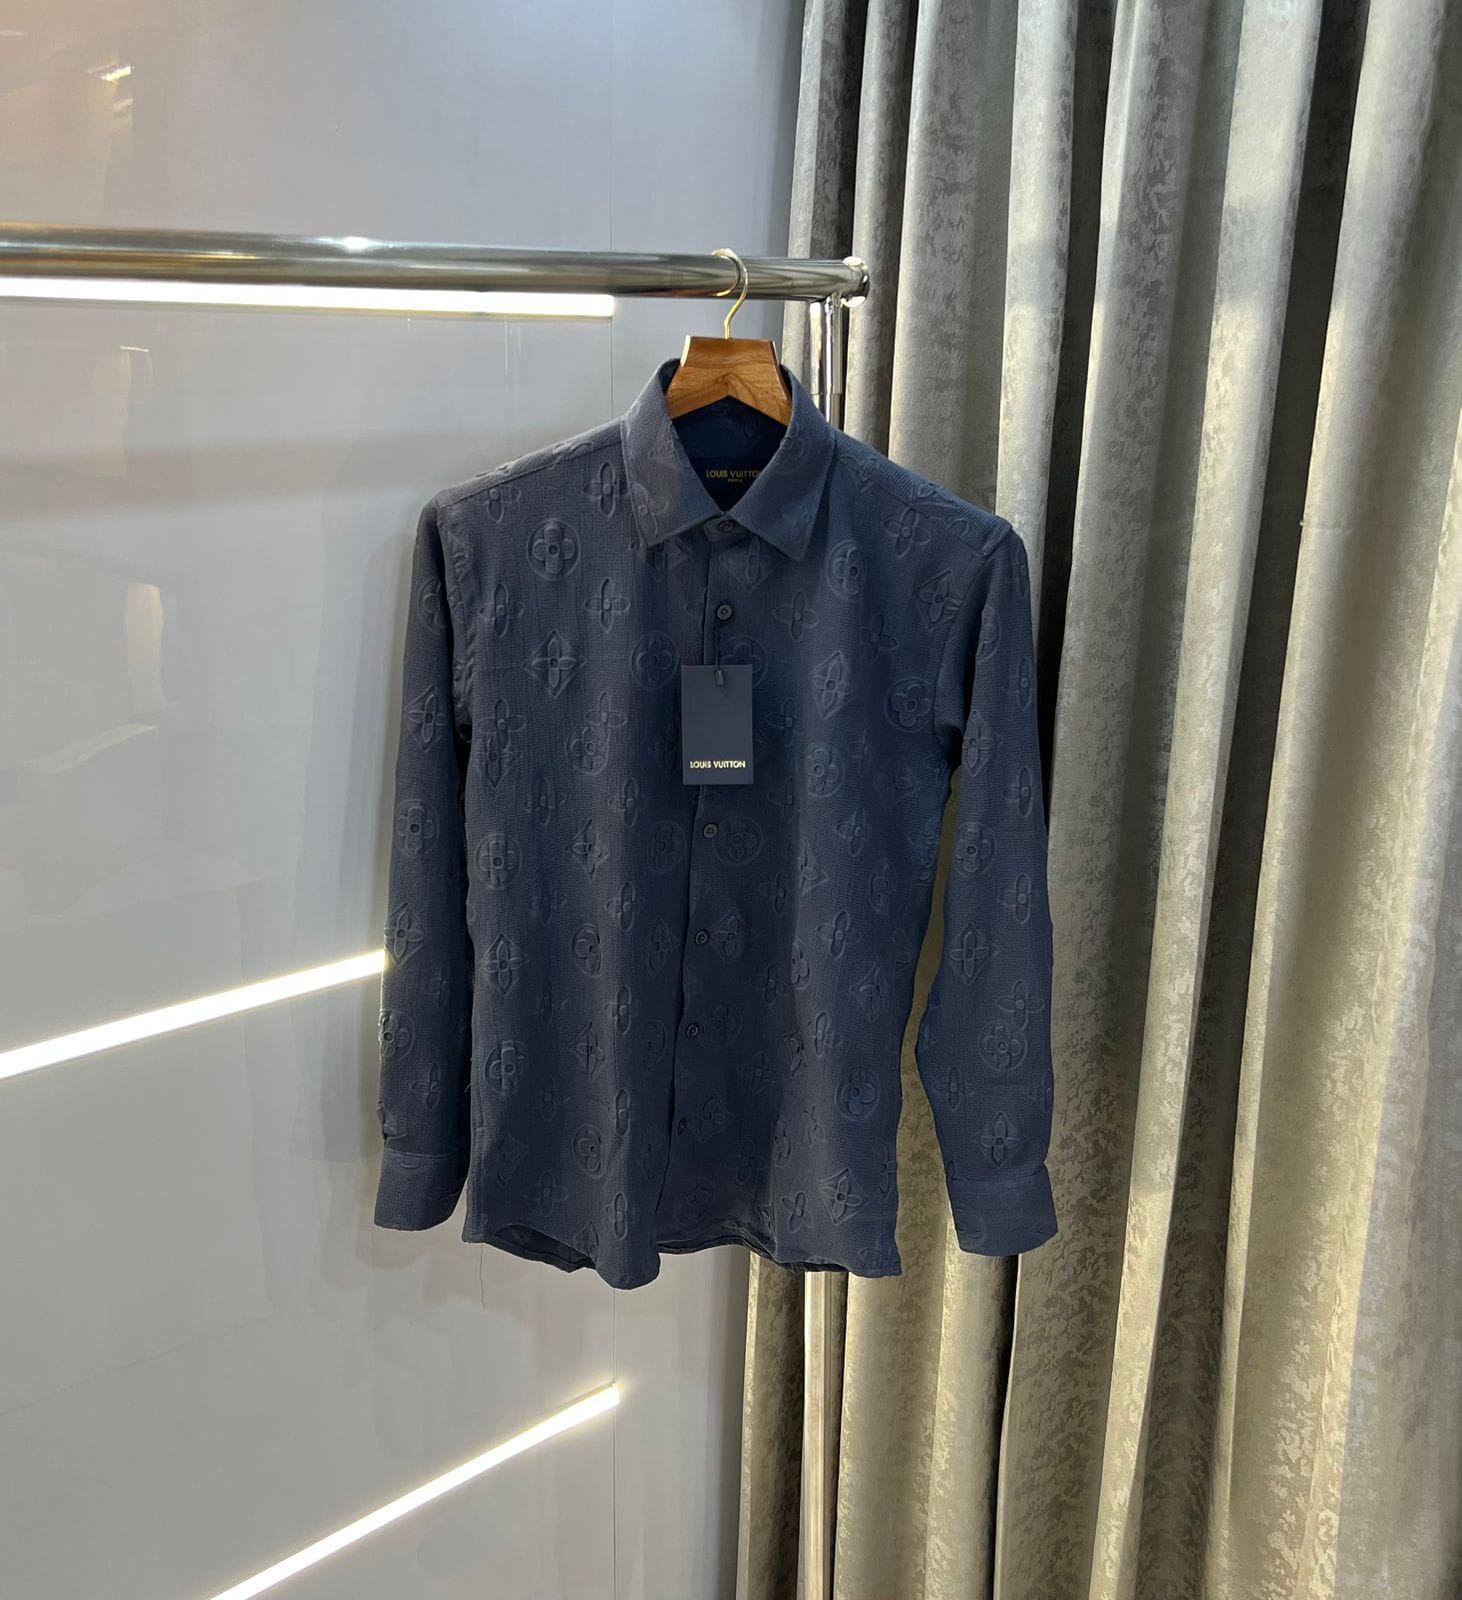 Louis Vuitton Black Long Sleeve Dress Shirt XL